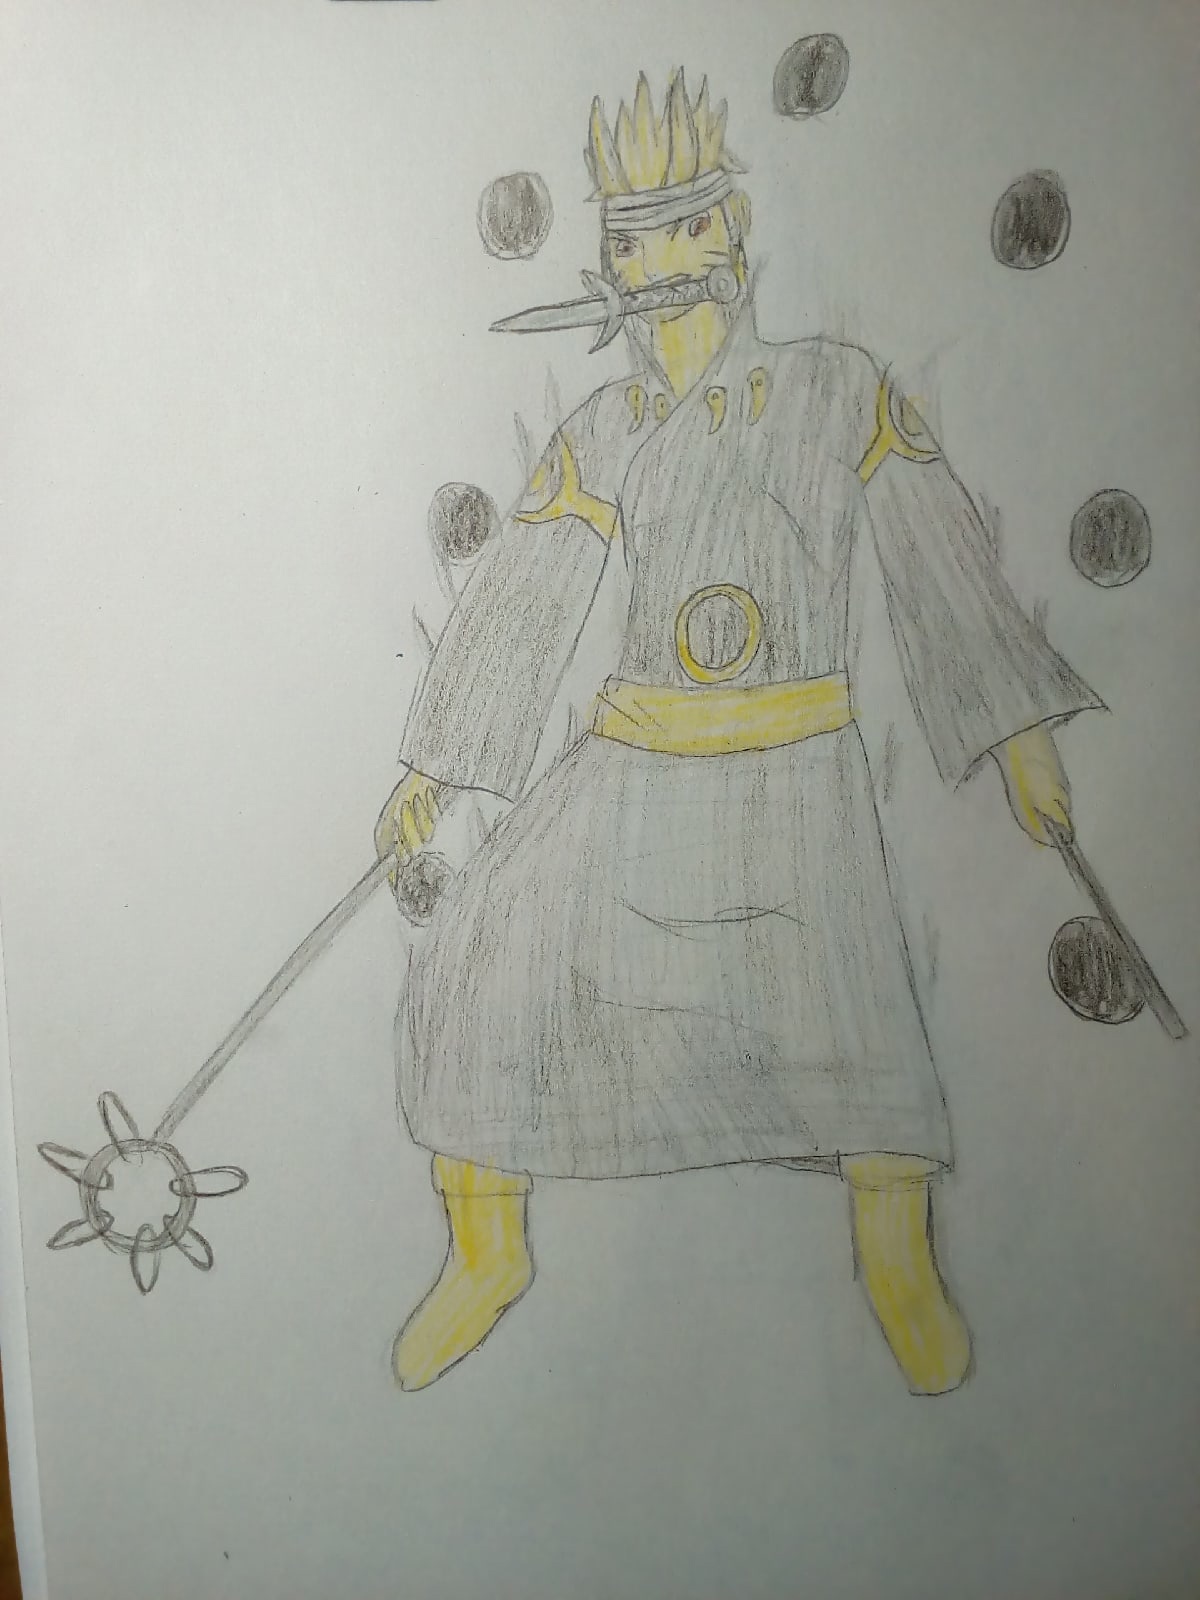 R E N E G A E D Z — [id: a full-body drawing of Naruto Uzumaki from